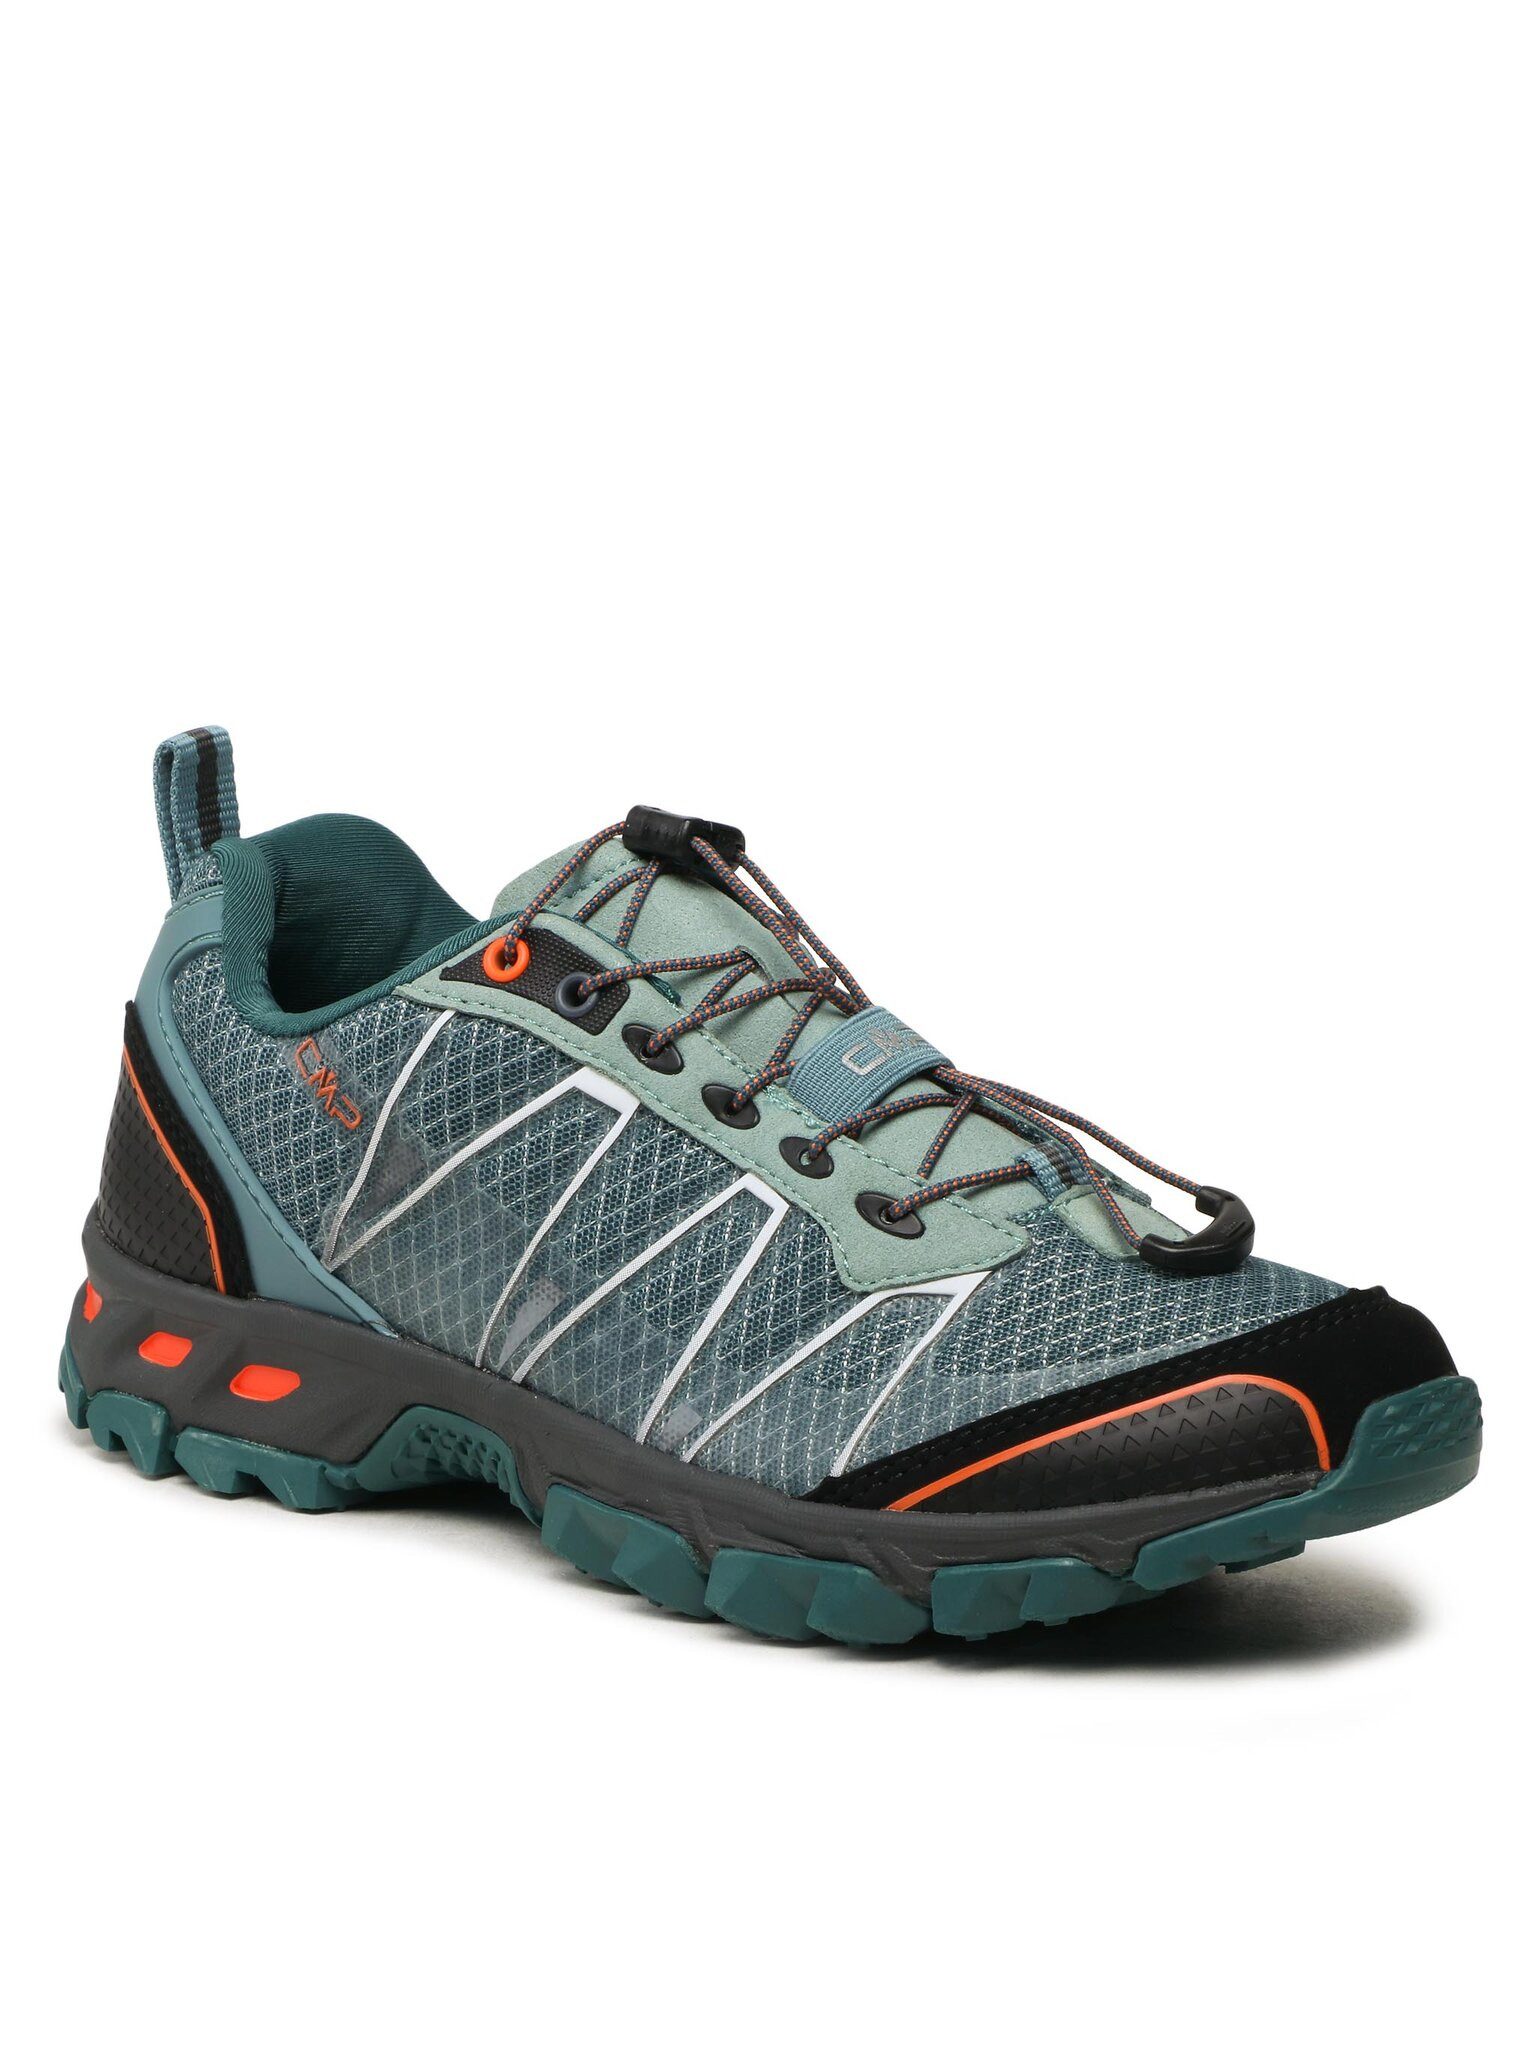 CMP Schuhe Altrak Trail Shoe 3Q95267 Artic/Flame 61MN Sneaker